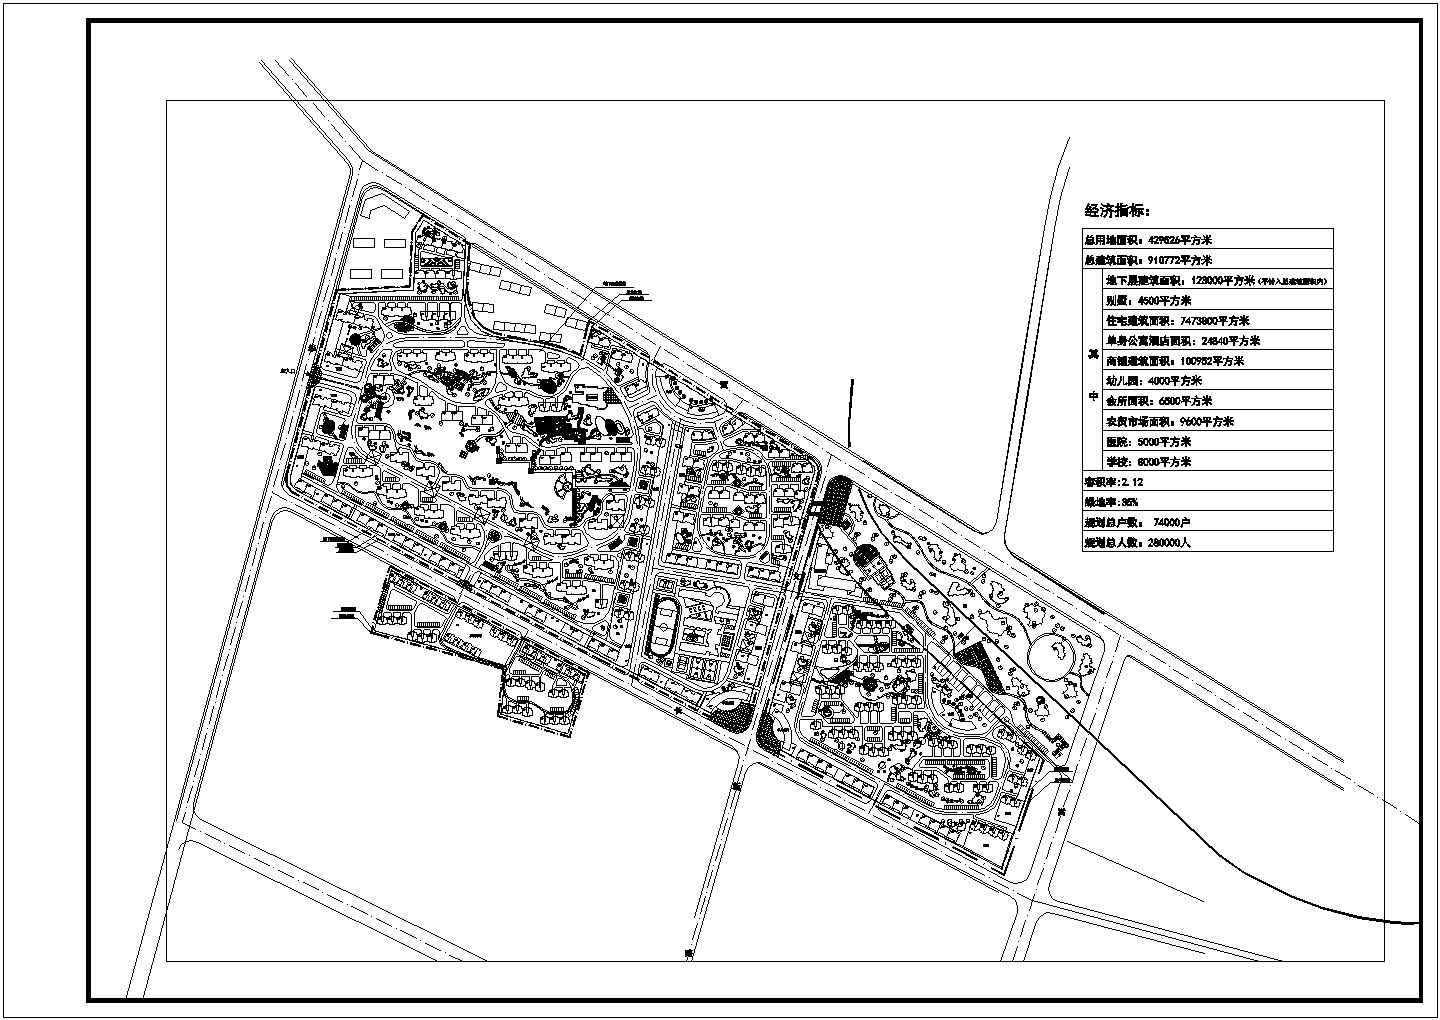 花湖住宅小区规划设计总平面布置图